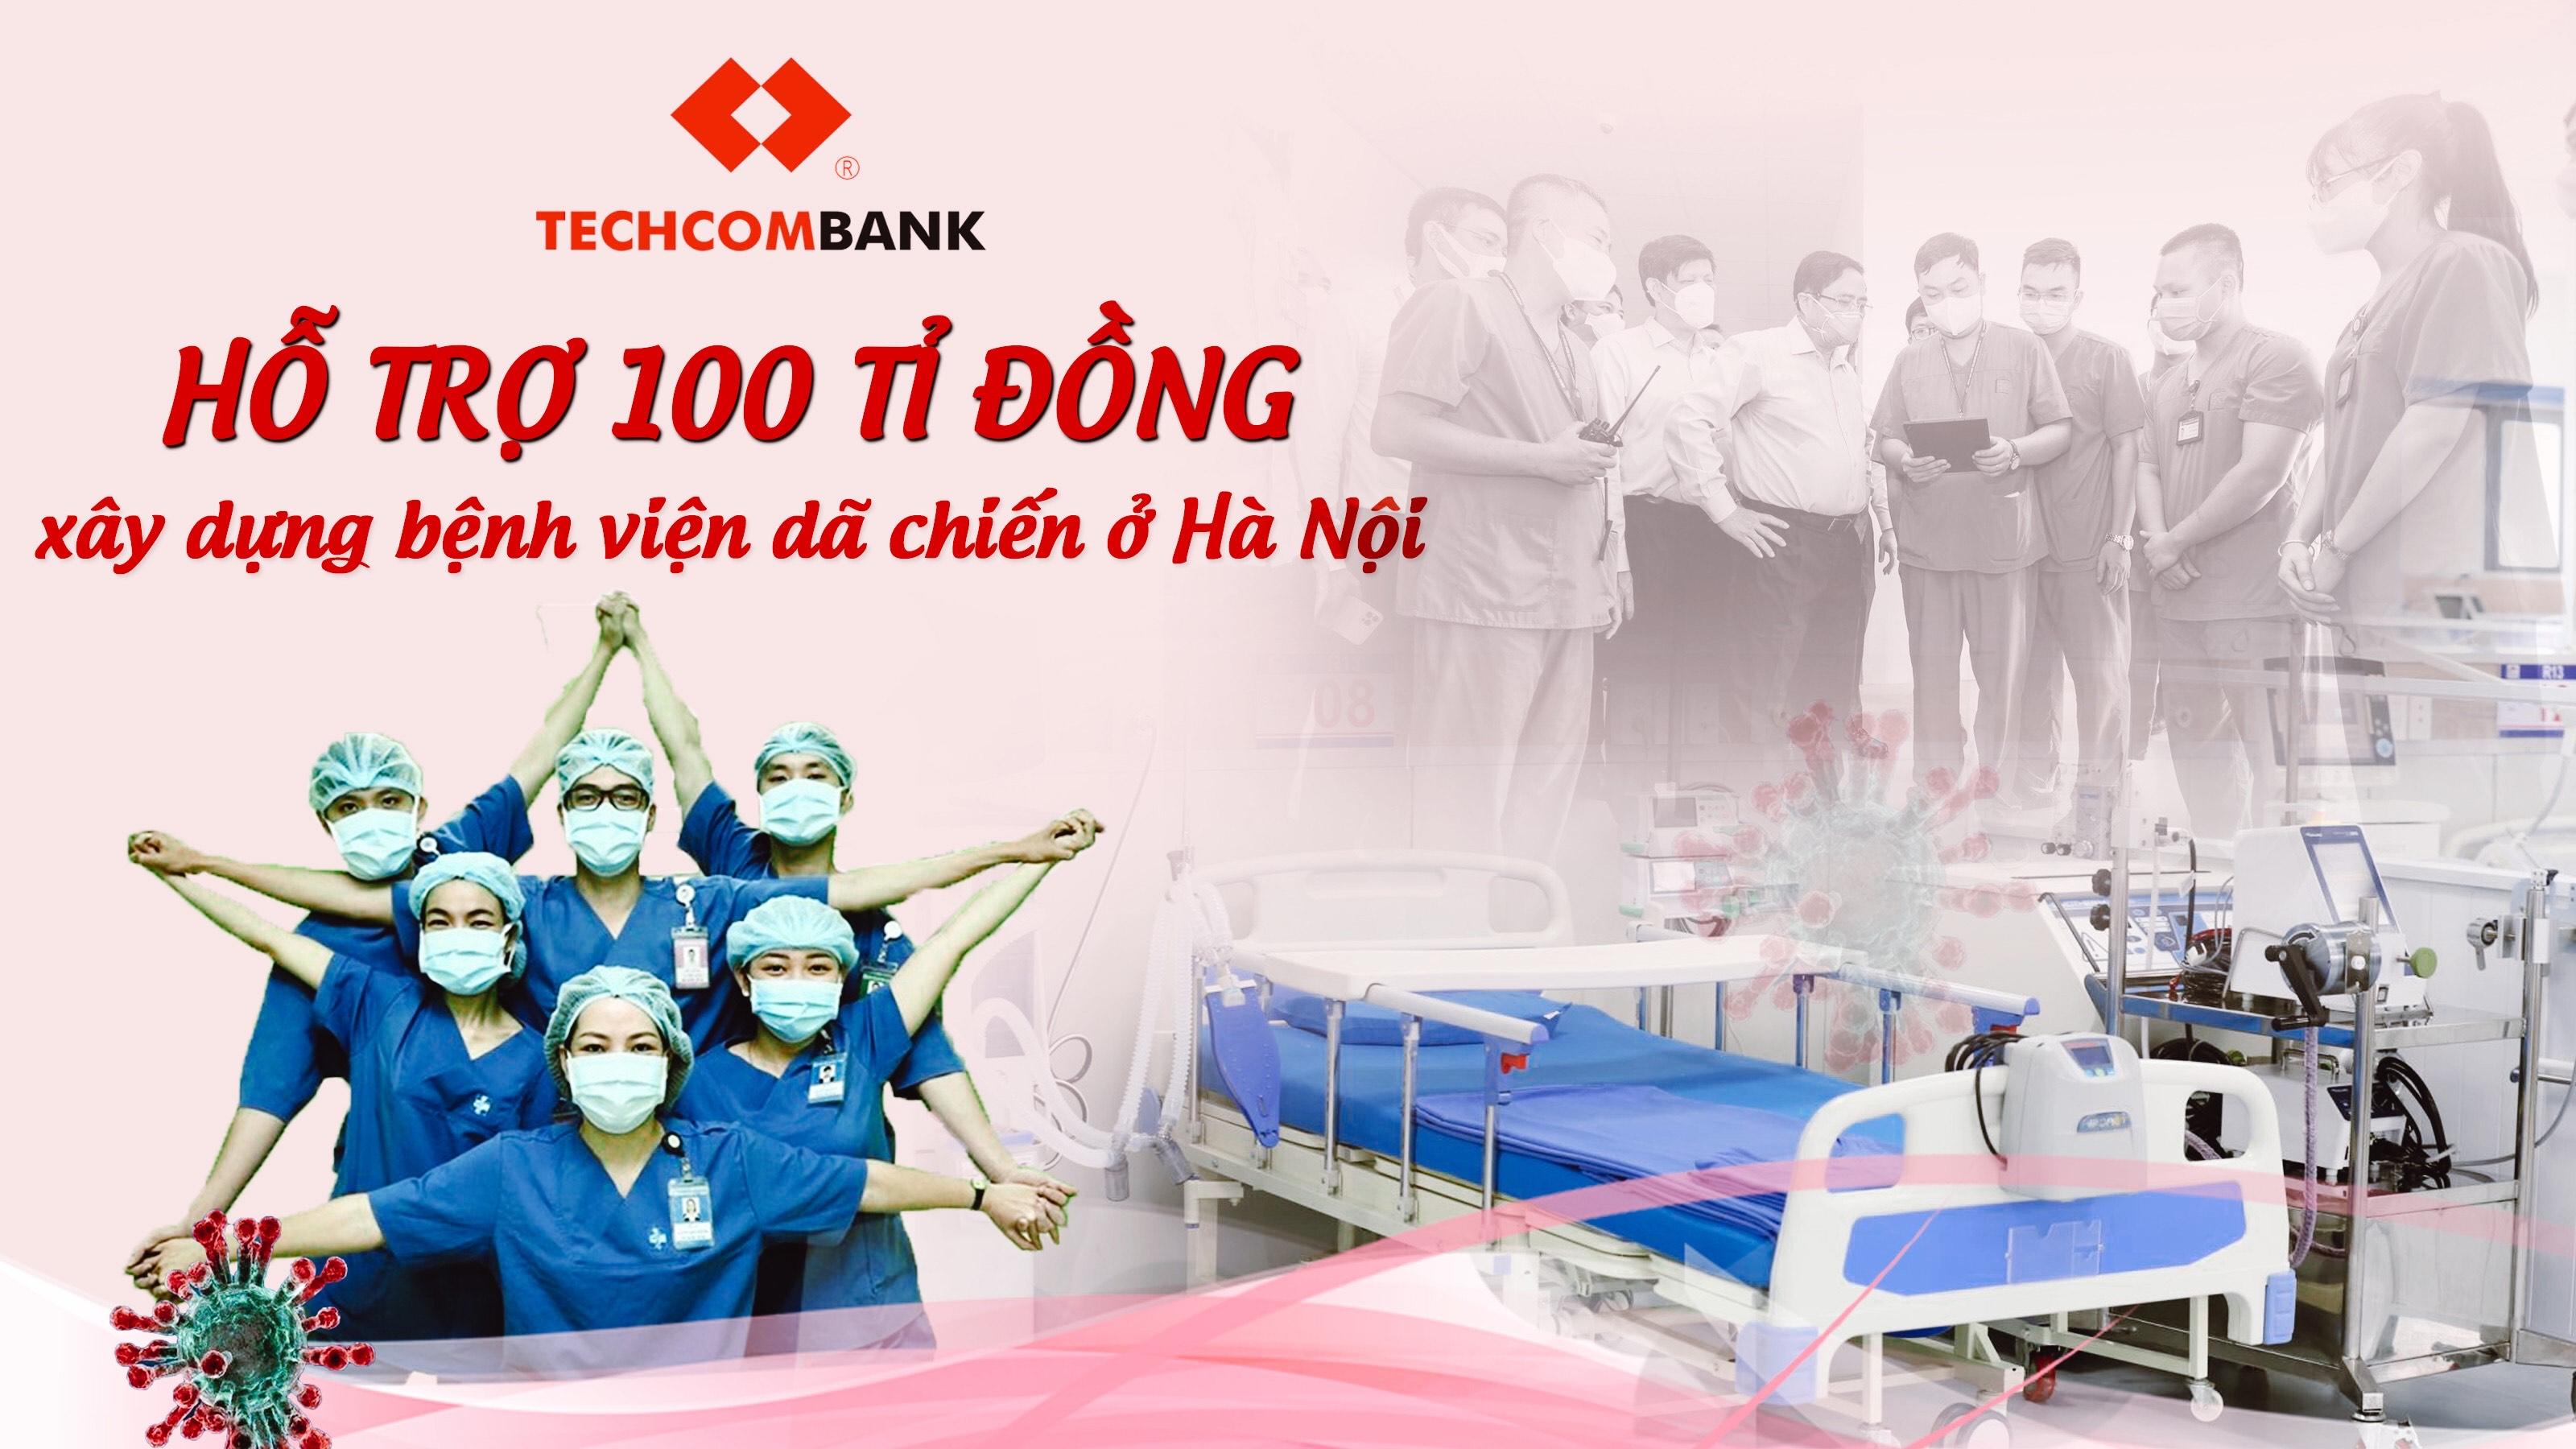 Techcombank hỗ trợ 100 tỉ đồng xây dựng bệnh viện dã chiến ở Hà Nội